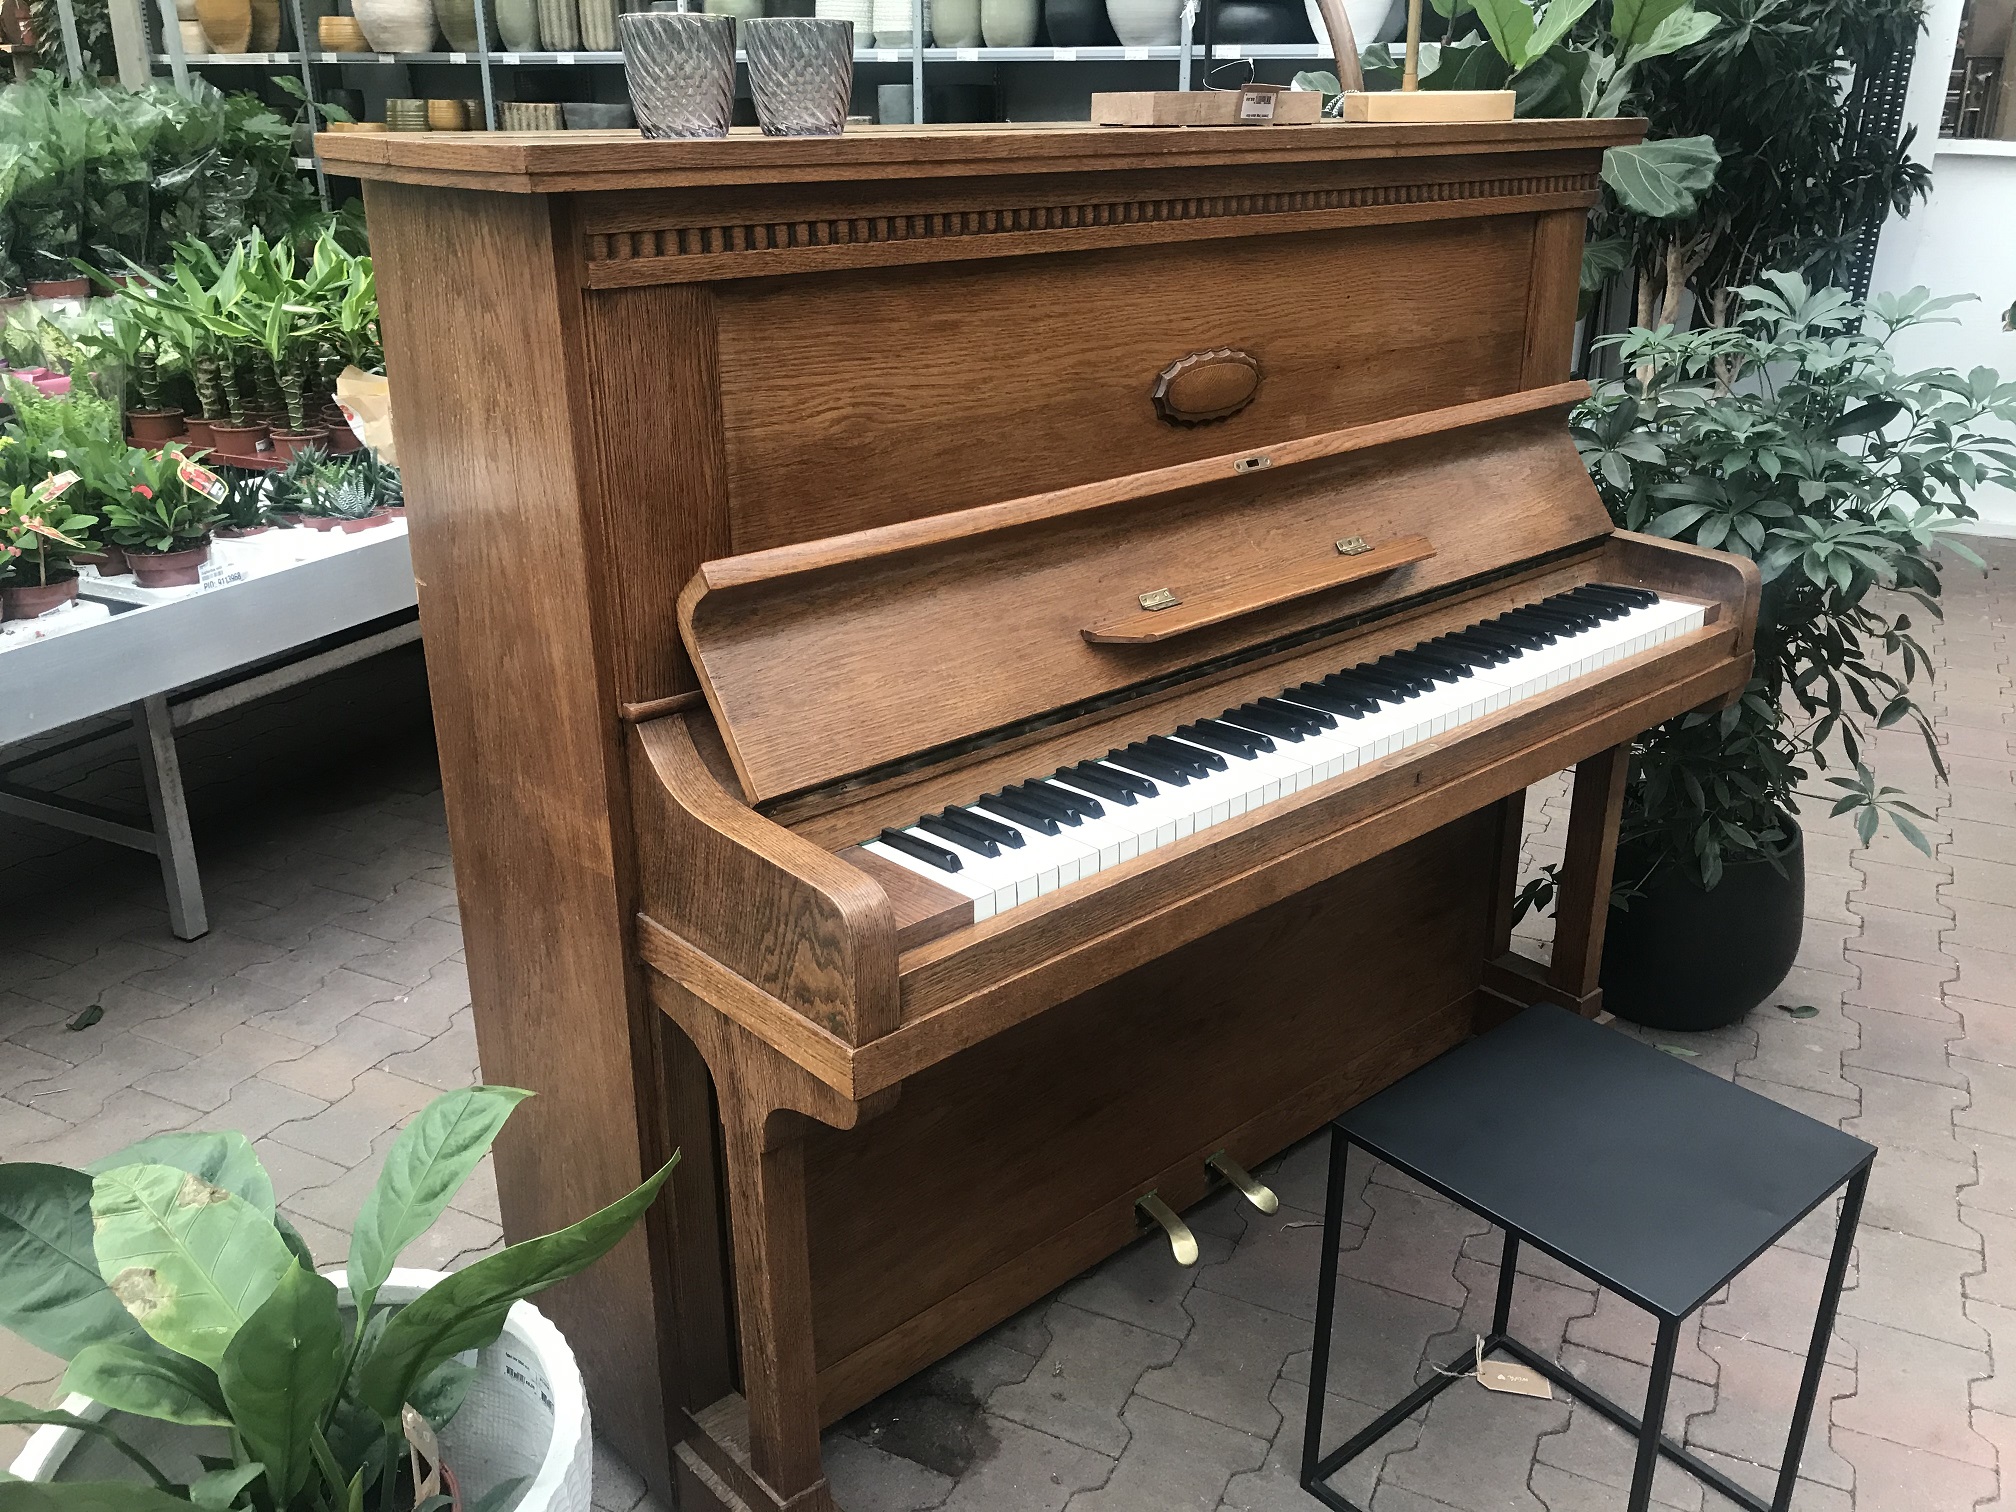 Piano in de Intratuin in Tilburg.